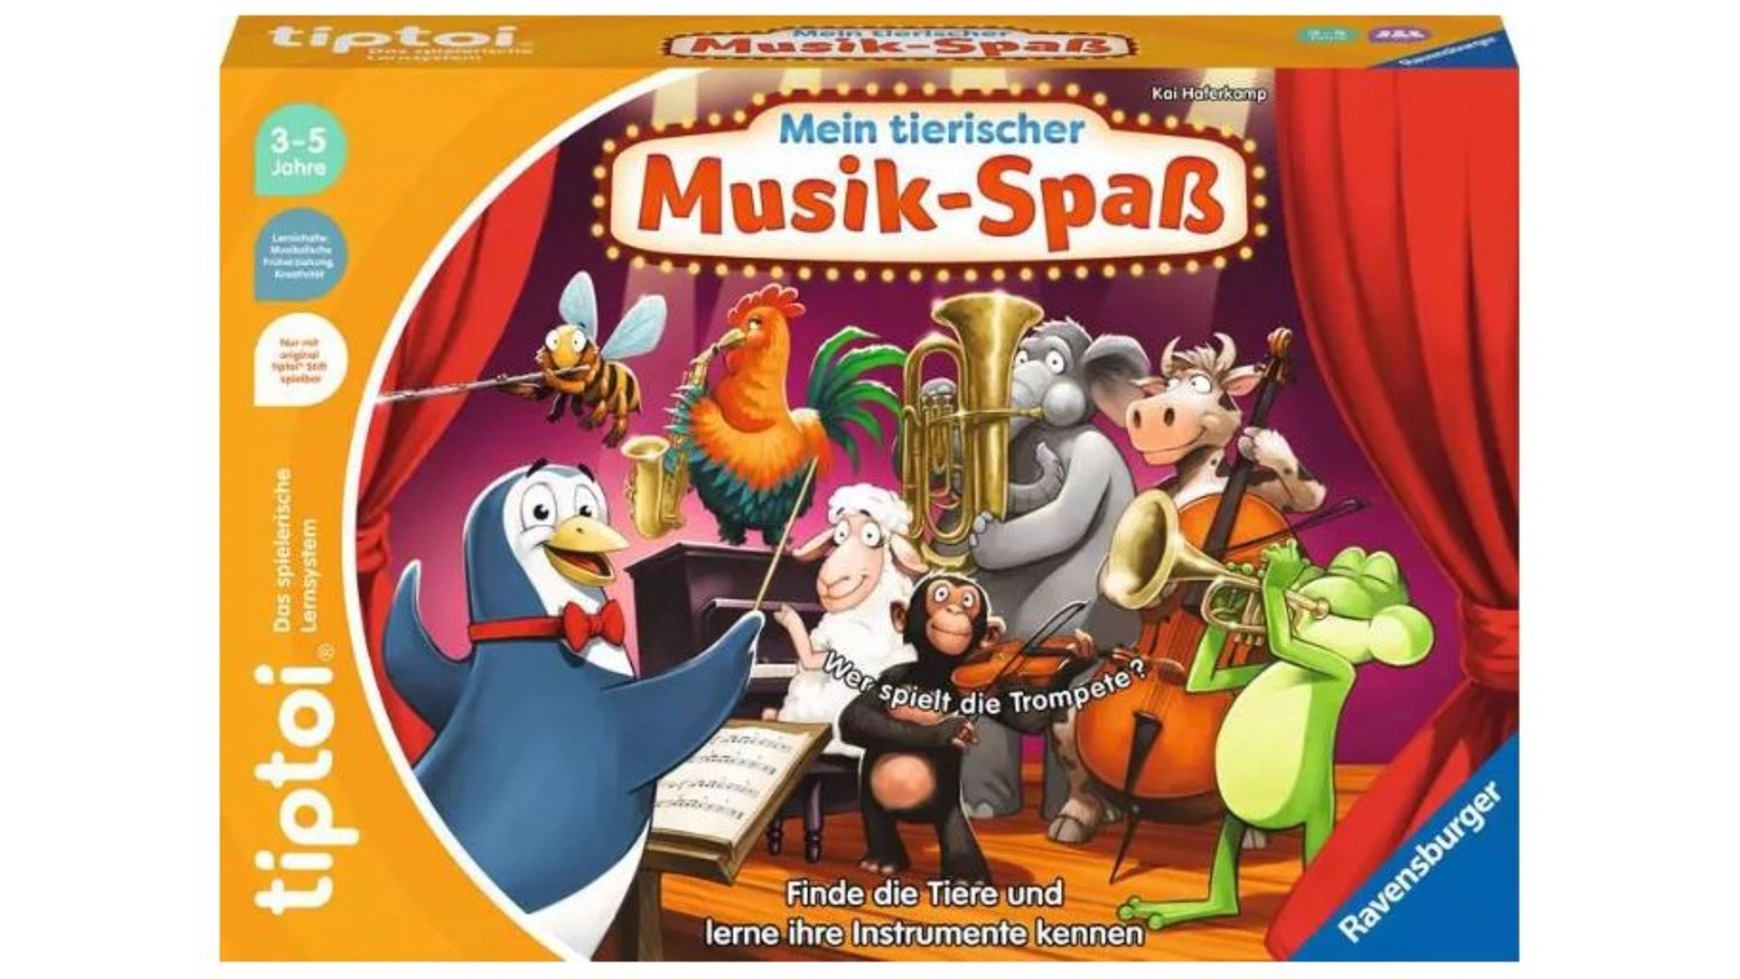 Ravensburger Tiptoi Музыкальная забава Мои животные развивающая Игра для детей от 3 лет и старше